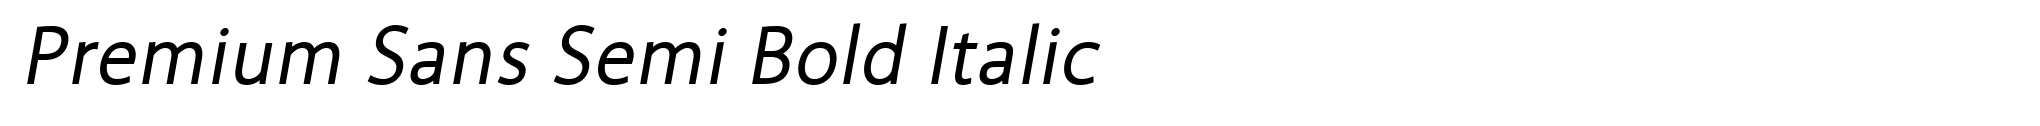 Premium Sans Semi Bold Italic image